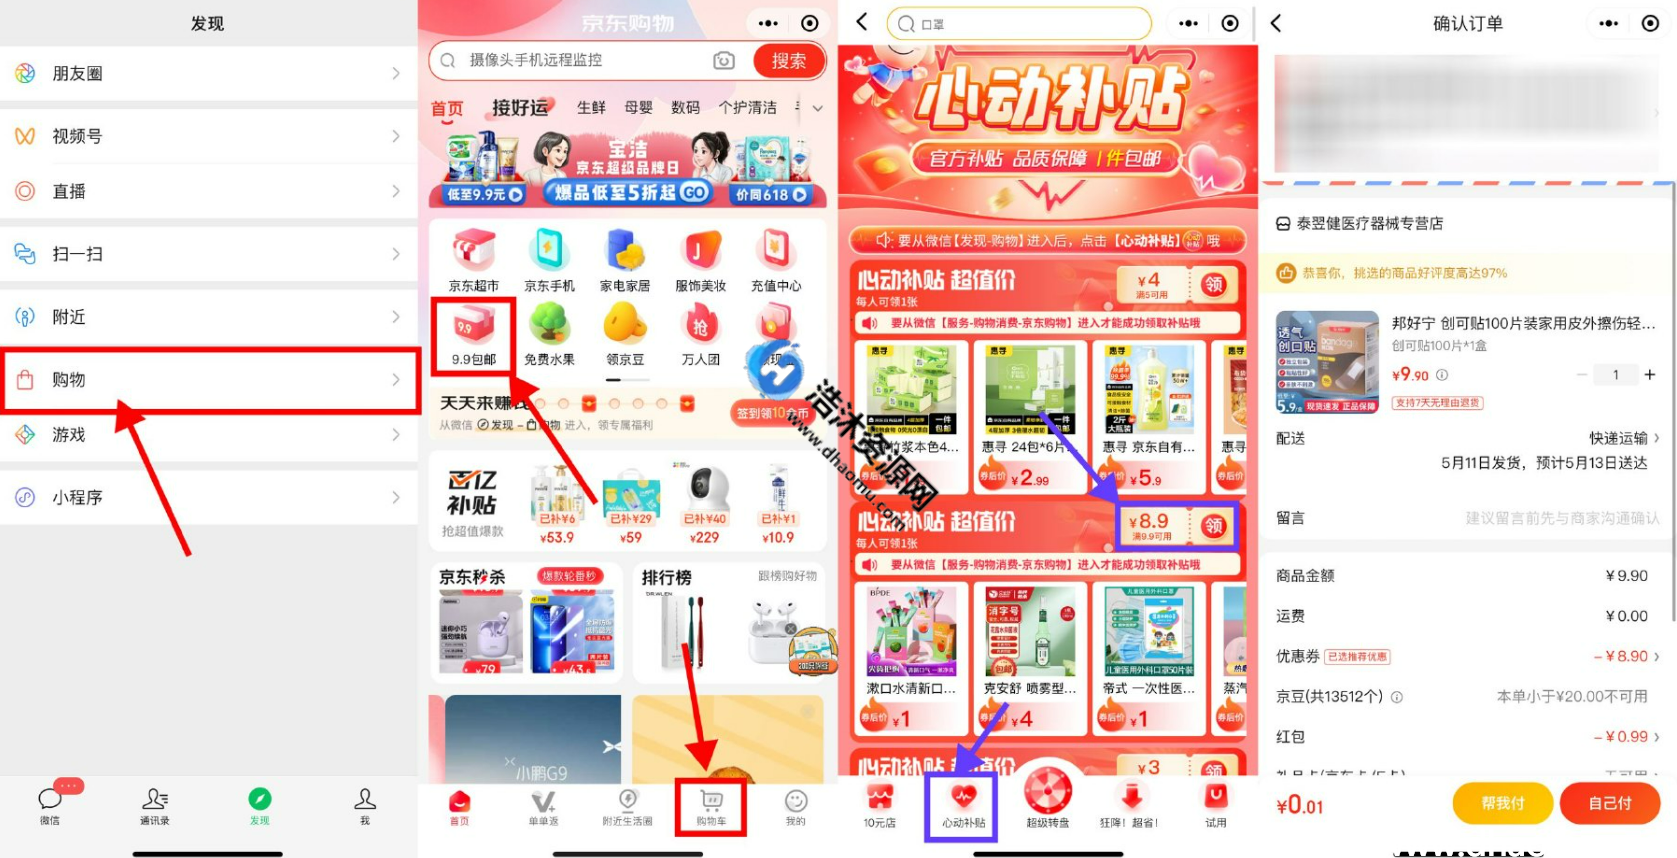 京东购物微信小程序9.9心动补贴包邮最低0.01元撸取实物包邮